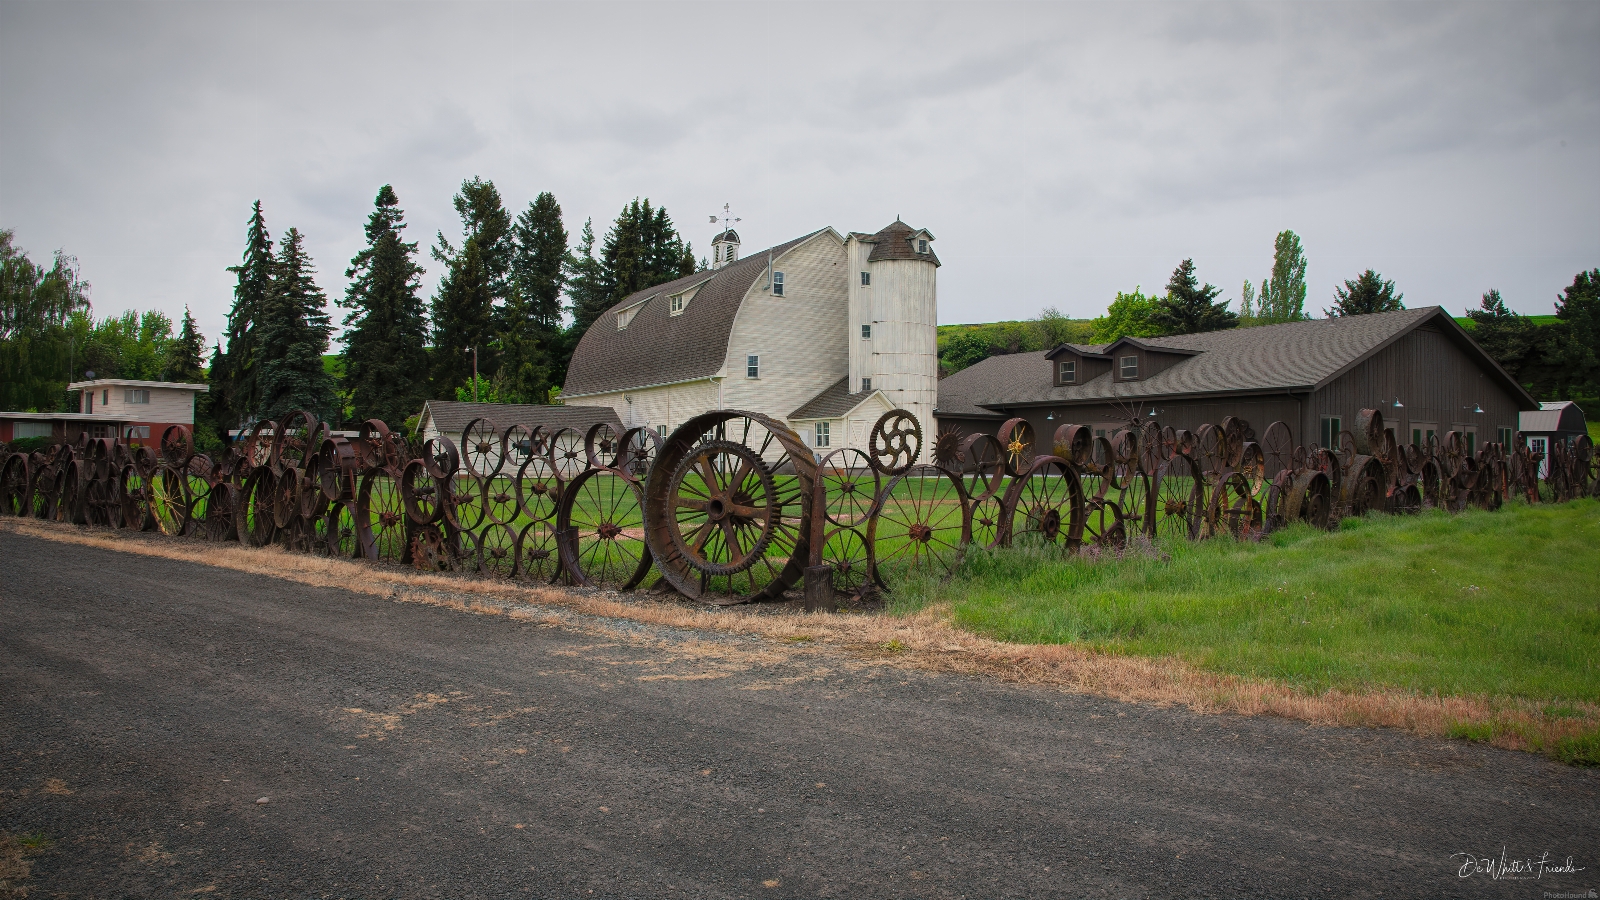 Image of Dahmen Barn and Wagon Wheel Fence by Dale DeWhitt